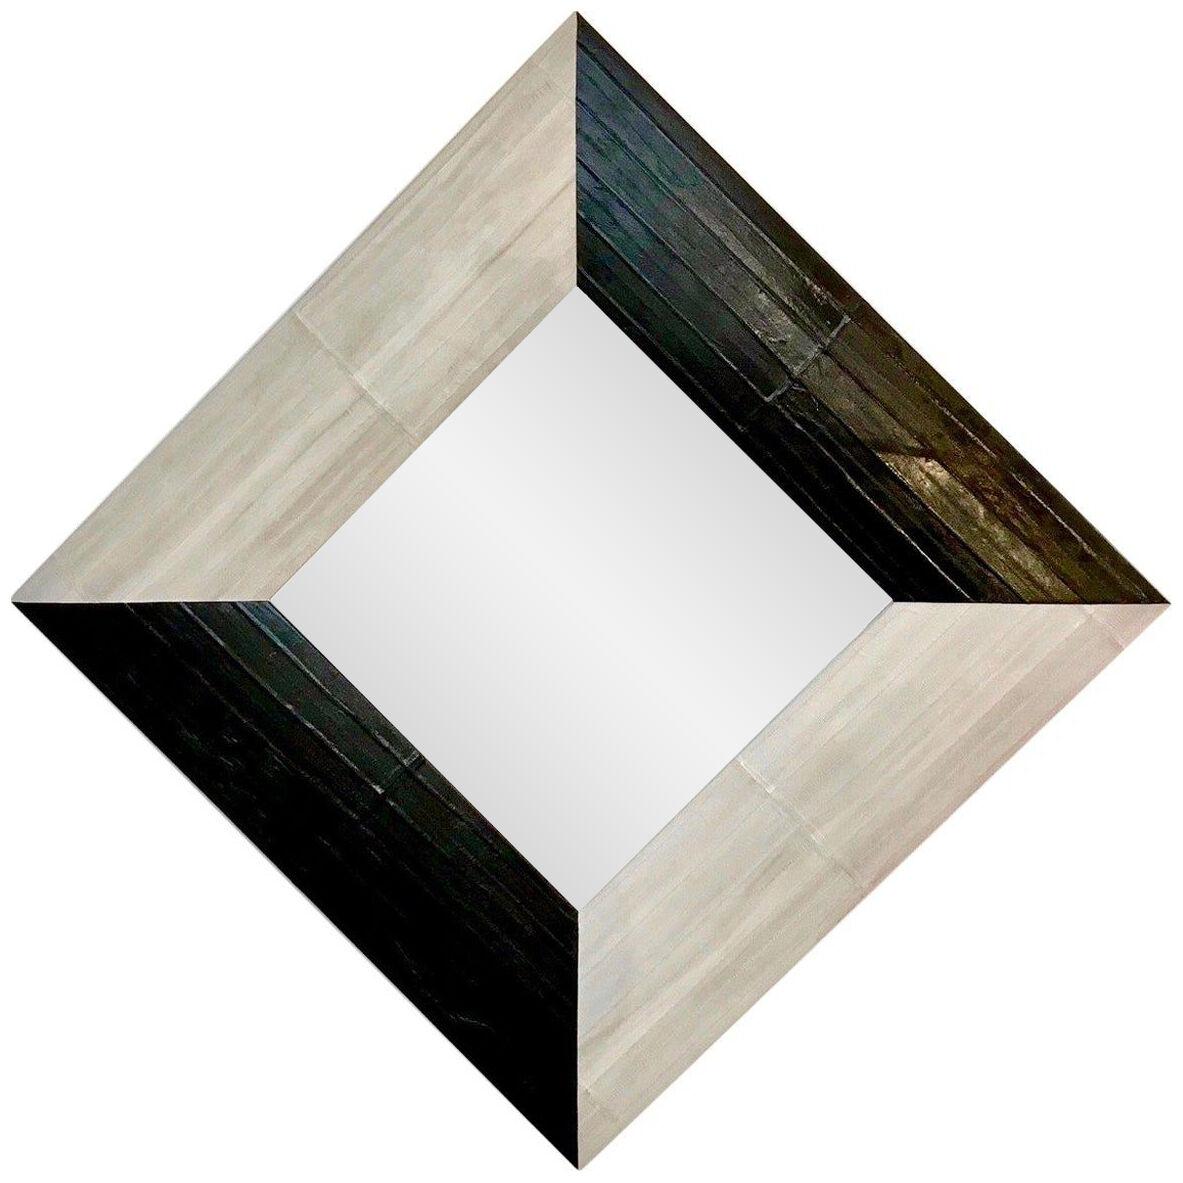 Contemporary Italian Square/Diamond Mirror in Black and Gray White Leather